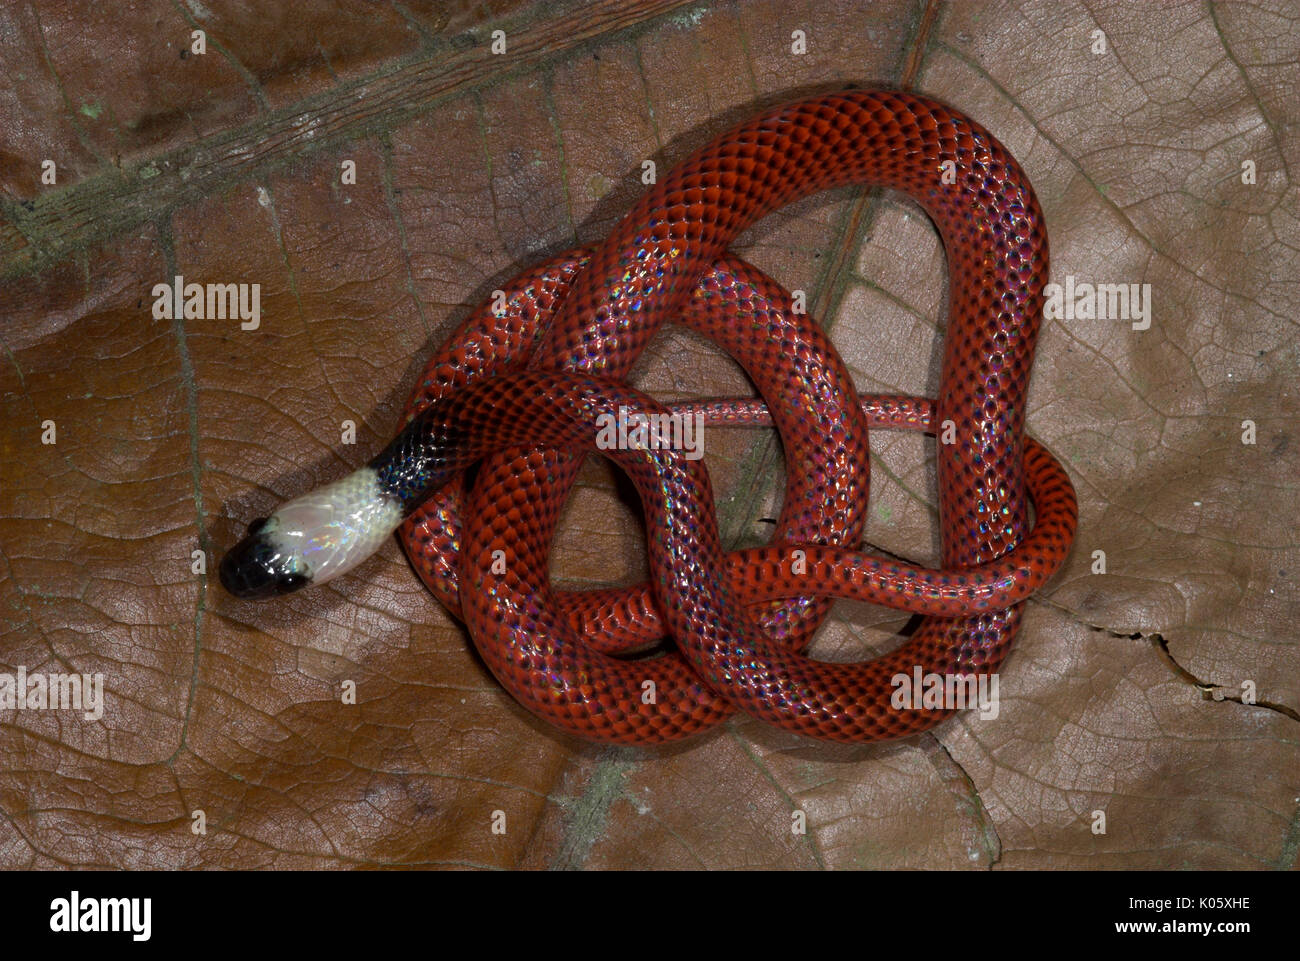 Amazon Ei essen Schlange, Drepanoides anomale, Iquitos, Peru, amazonien Urwald, gewellt auf Blatt. Stockfoto